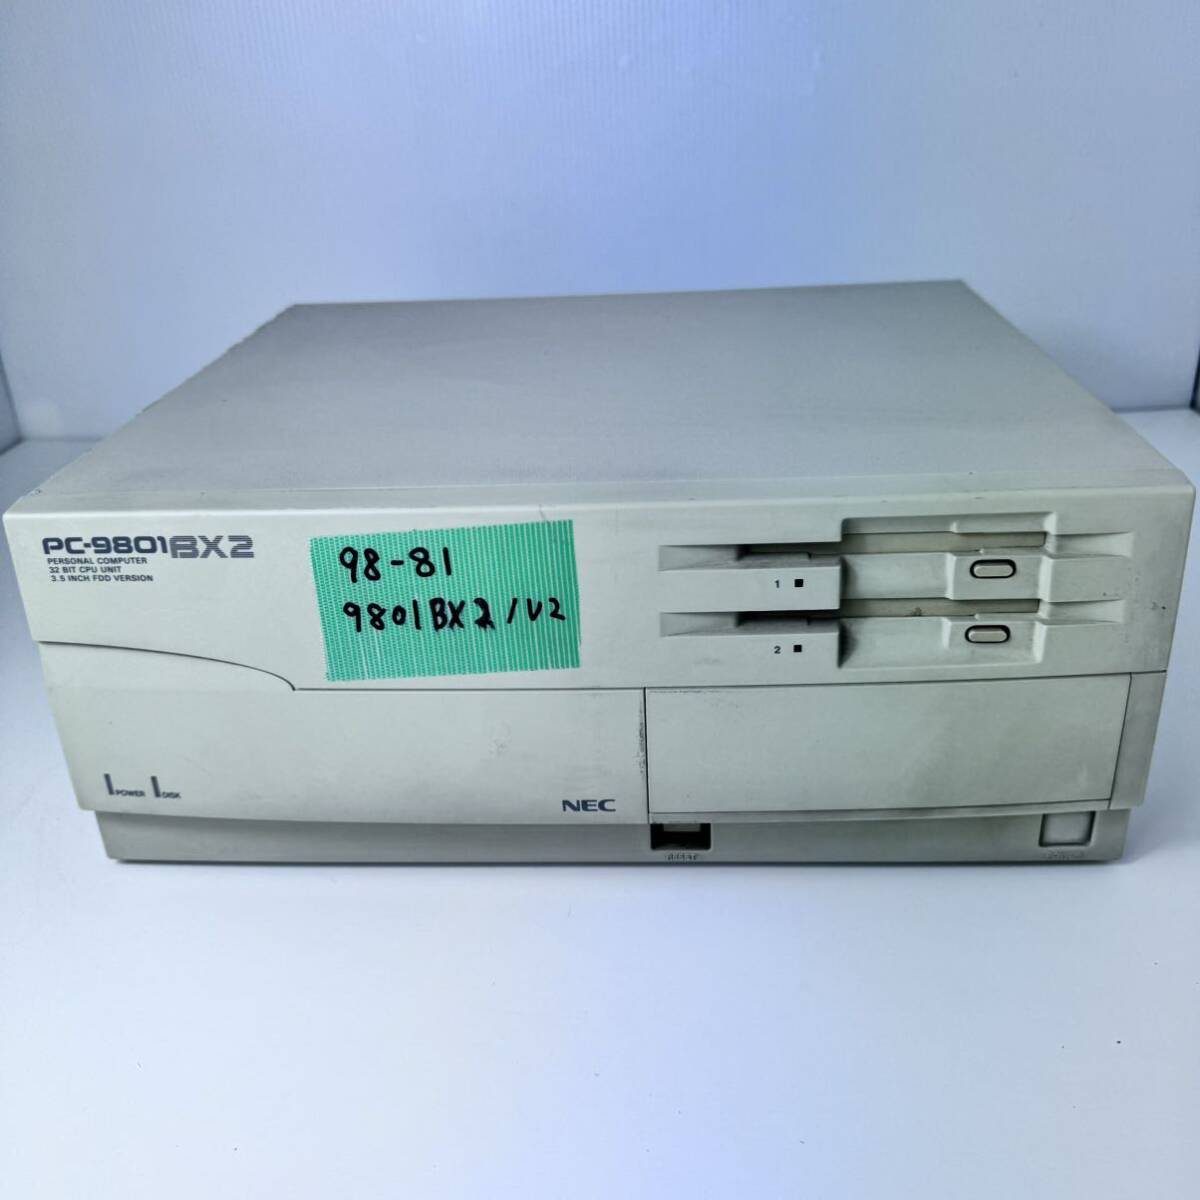 98-81 NEC PC-9801BX2/U2 HDD нет 486SX 25Mhz 640+1024pipo звук стал.FDD..MS-DOS6.20 пуск проверка смог сделать.